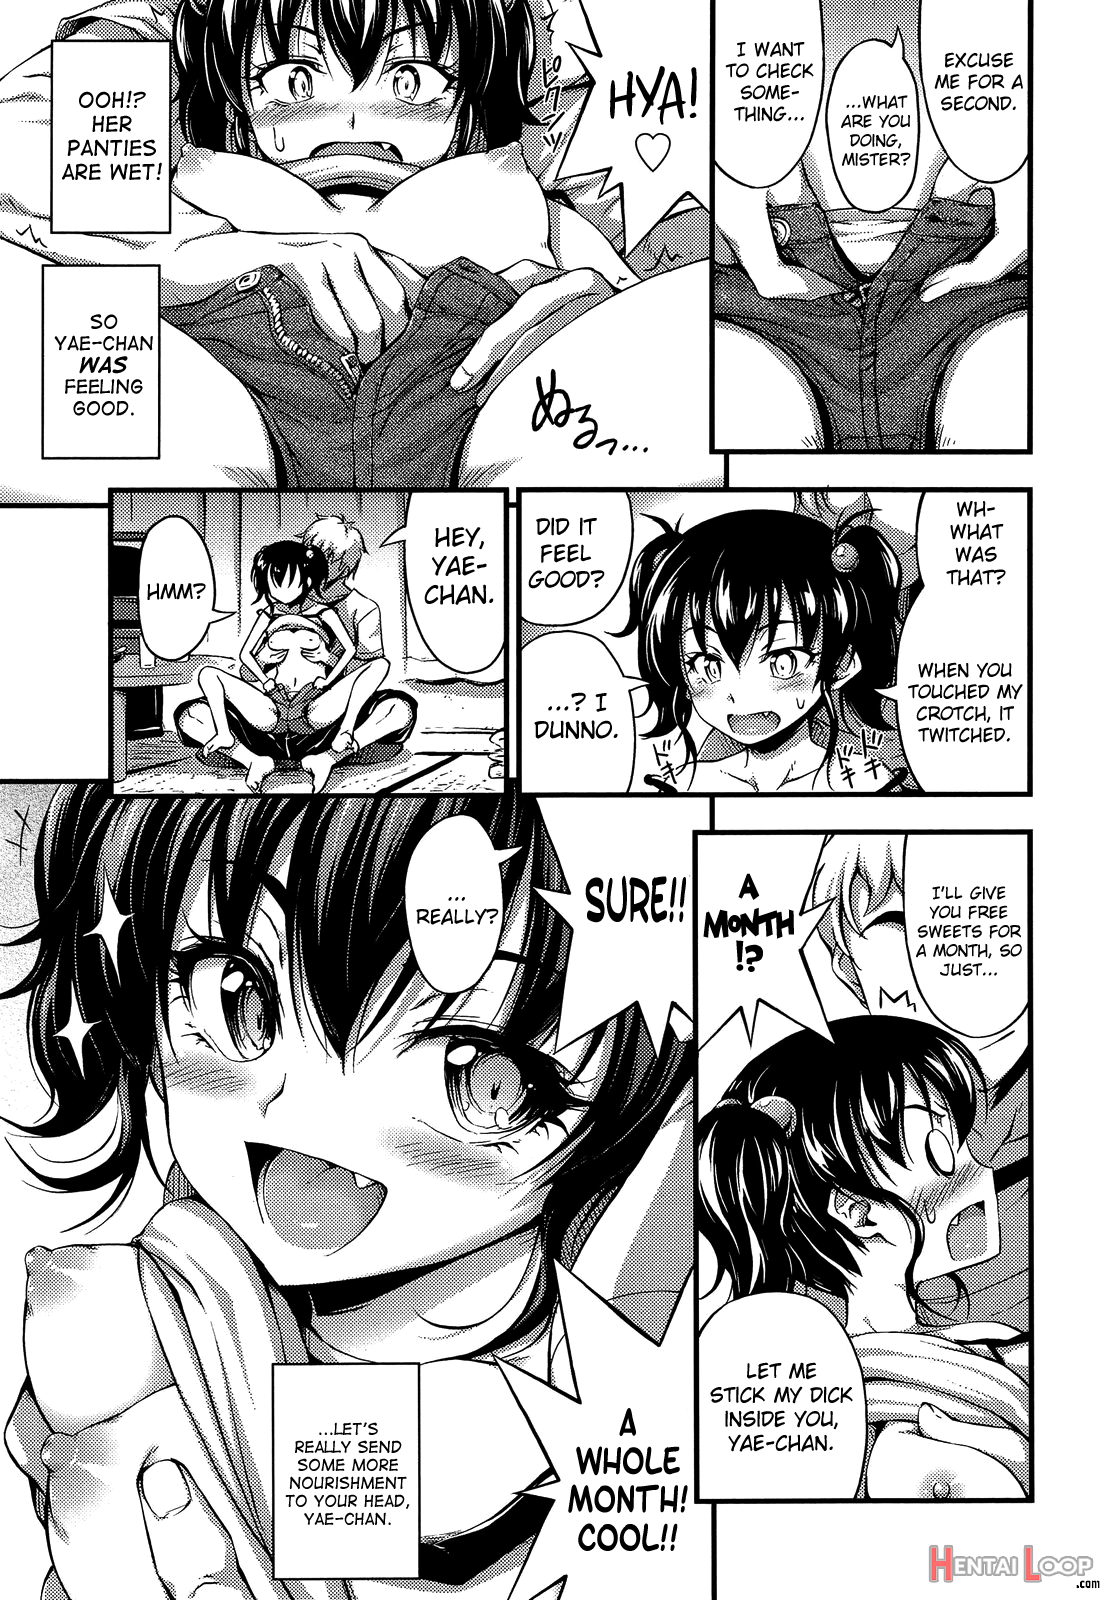 Okashina Ko page 5